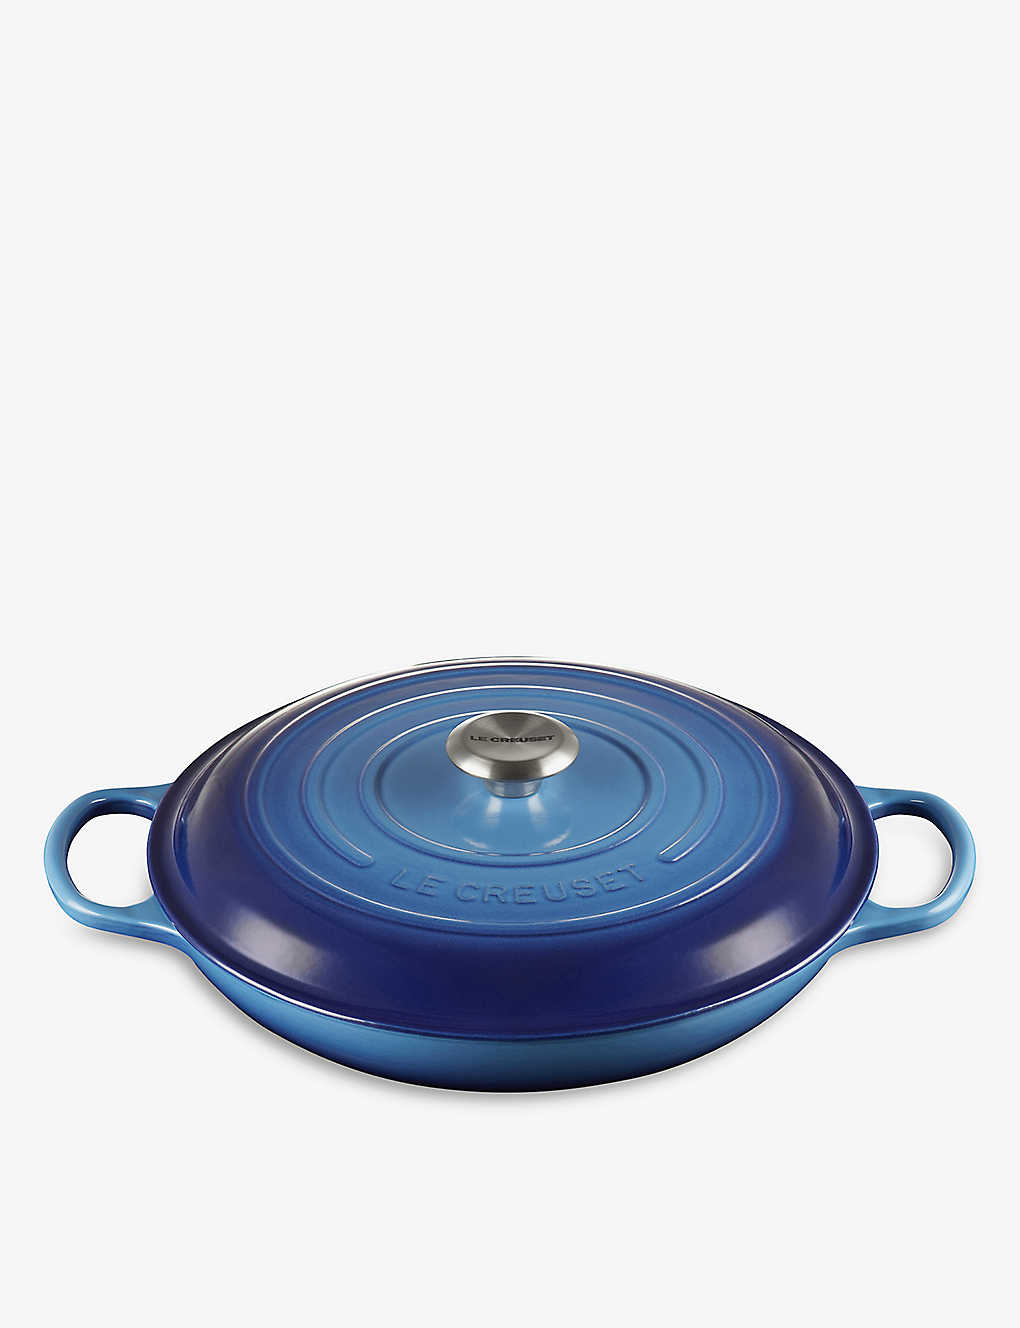 楽天Global HomesLE CREUSET オーバル シャロー キャストアイアン キャセロールディッシュ 3.5L Oval shallow cast iron casserole dish 3.5L AZURE BLUE